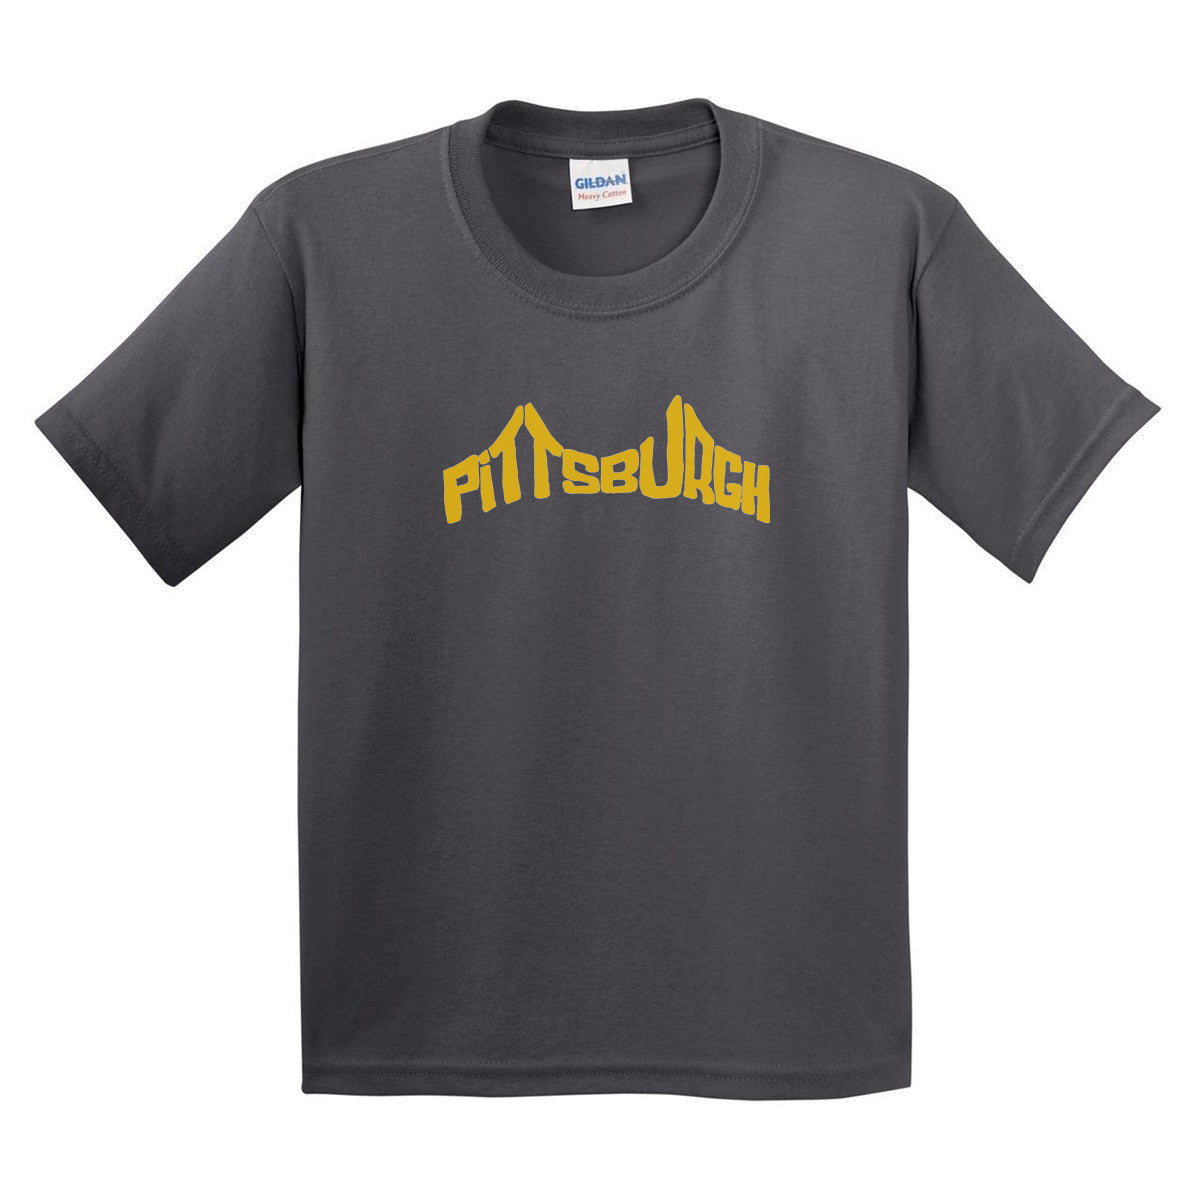 pittsburgh t shirts